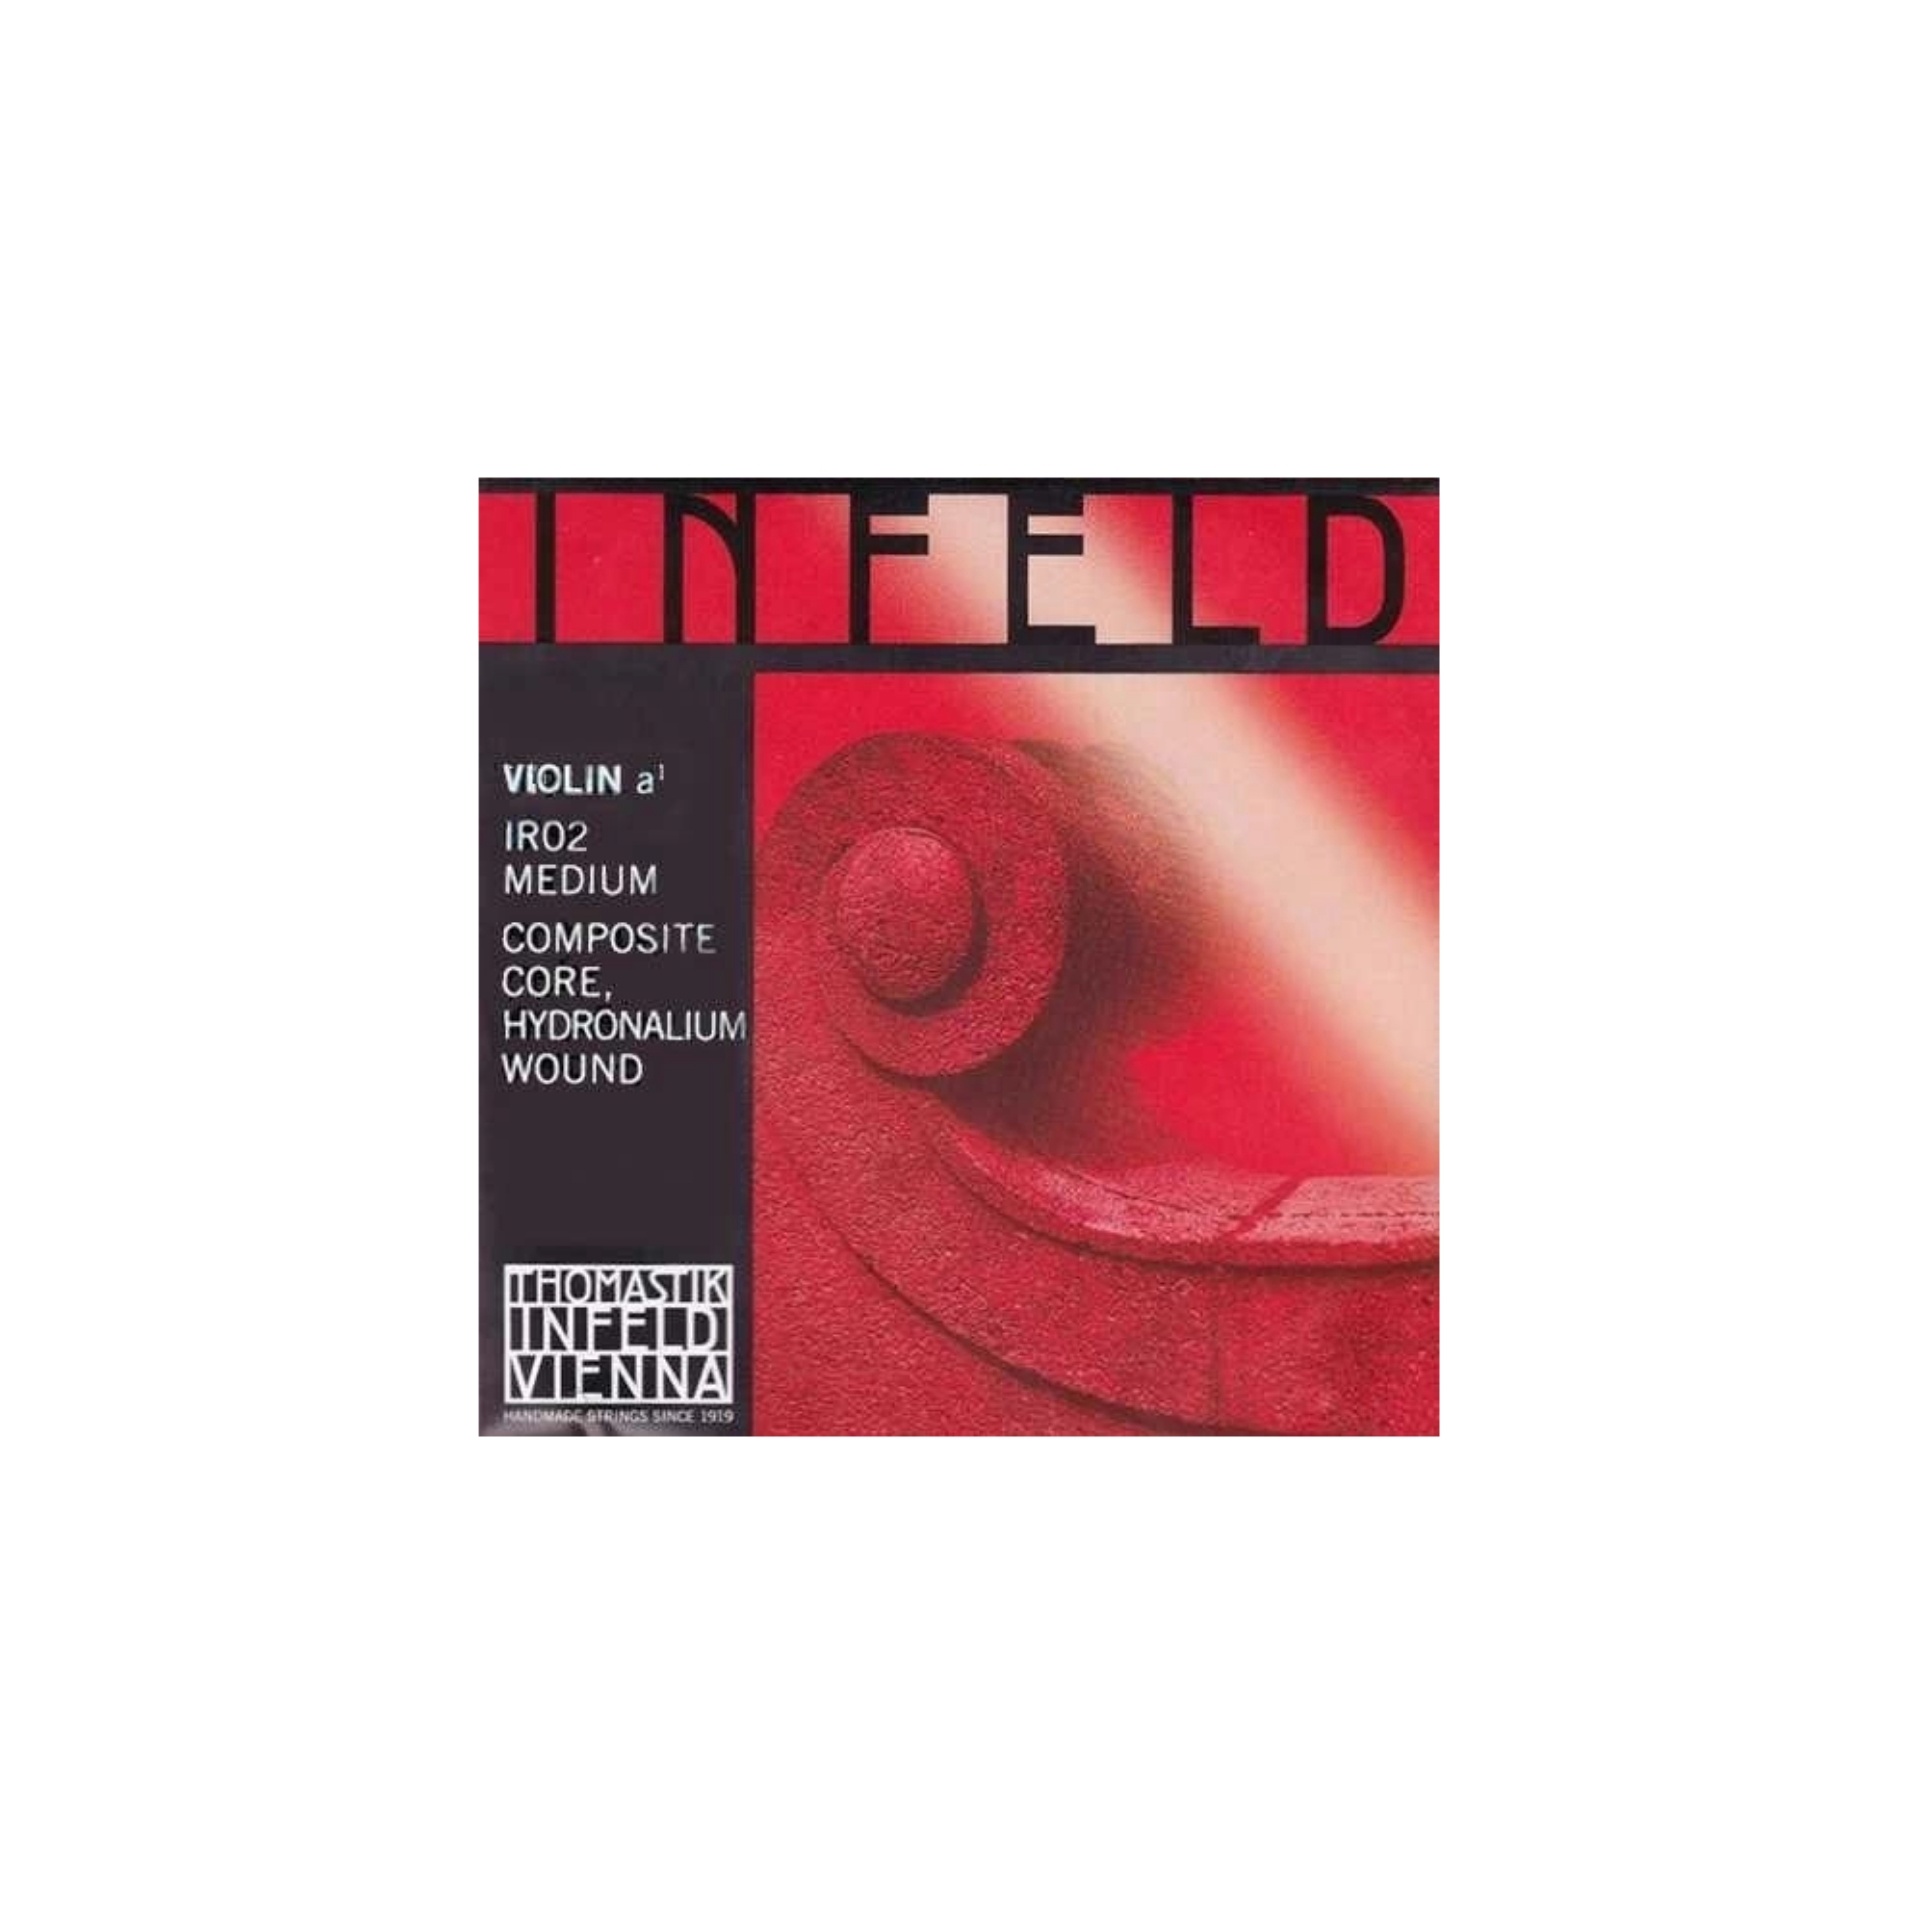 Infeld Red Отдельная струна А/Ля для скрипки размером 4/4, среднее натяжение, Thomastik IR